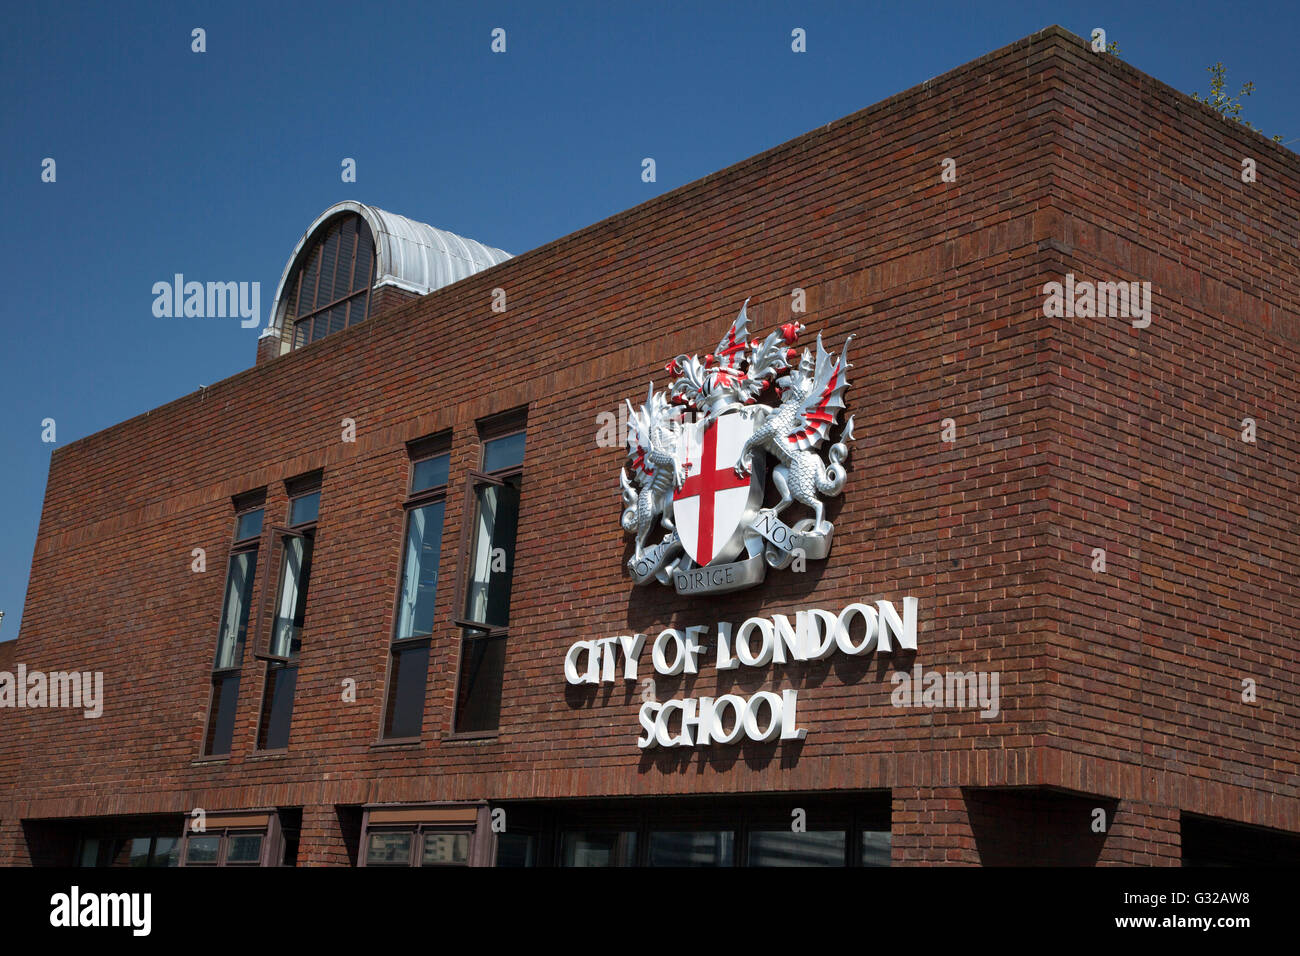 City of London School, Londres Banque D'Images